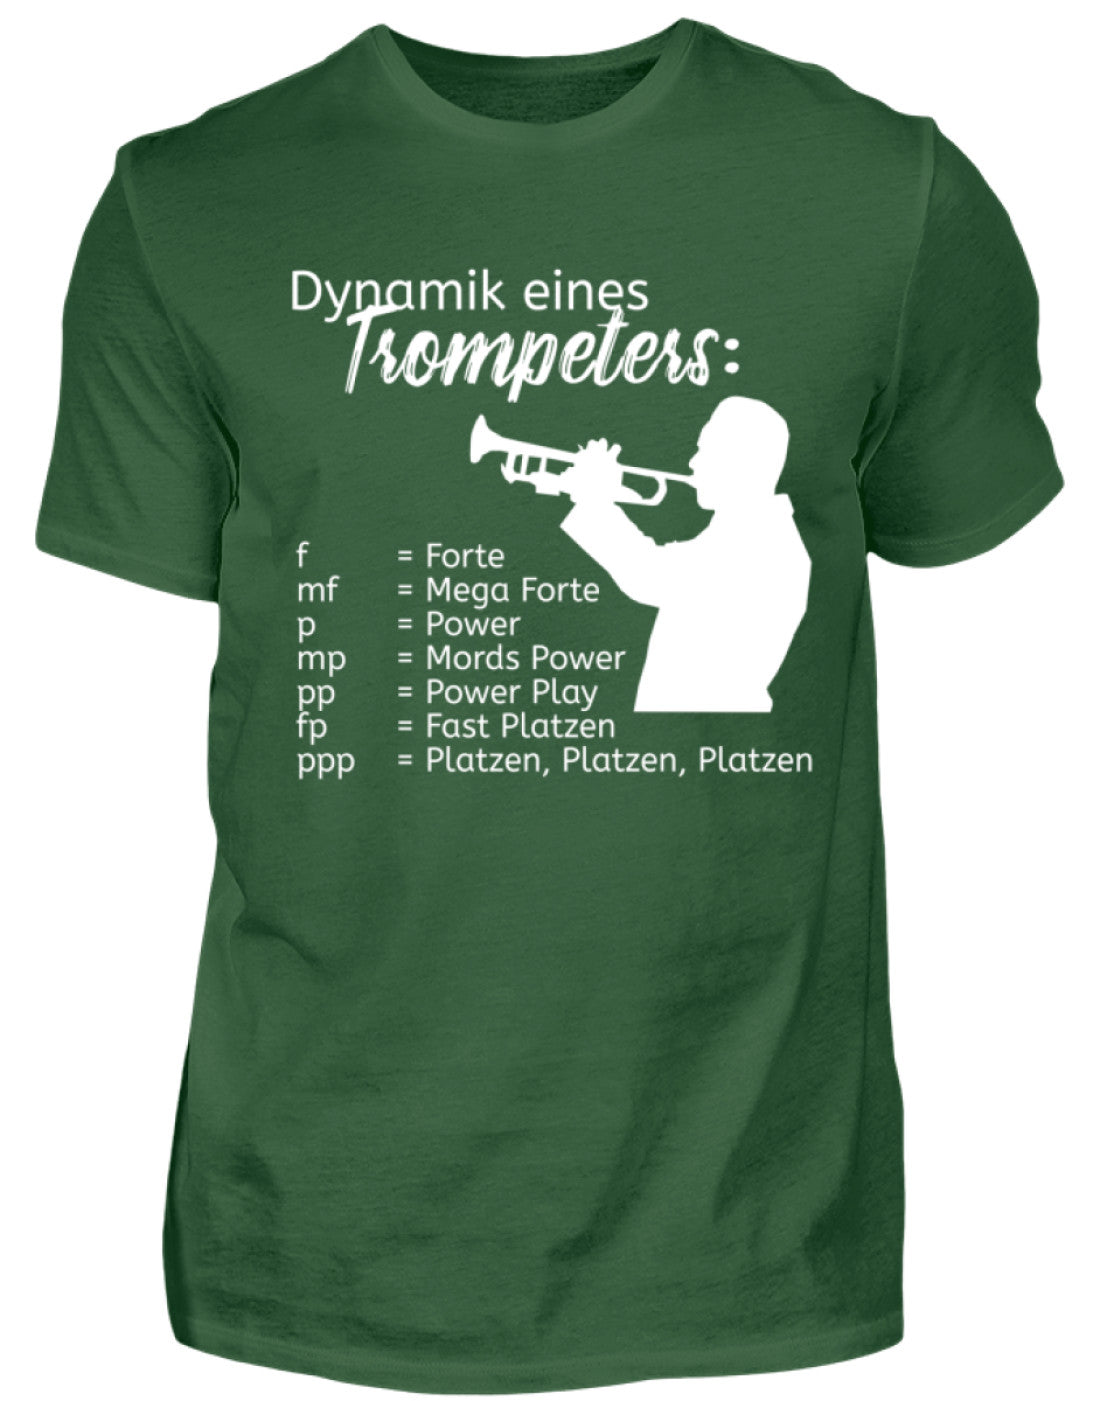 Musiker T-Shirt Trompete